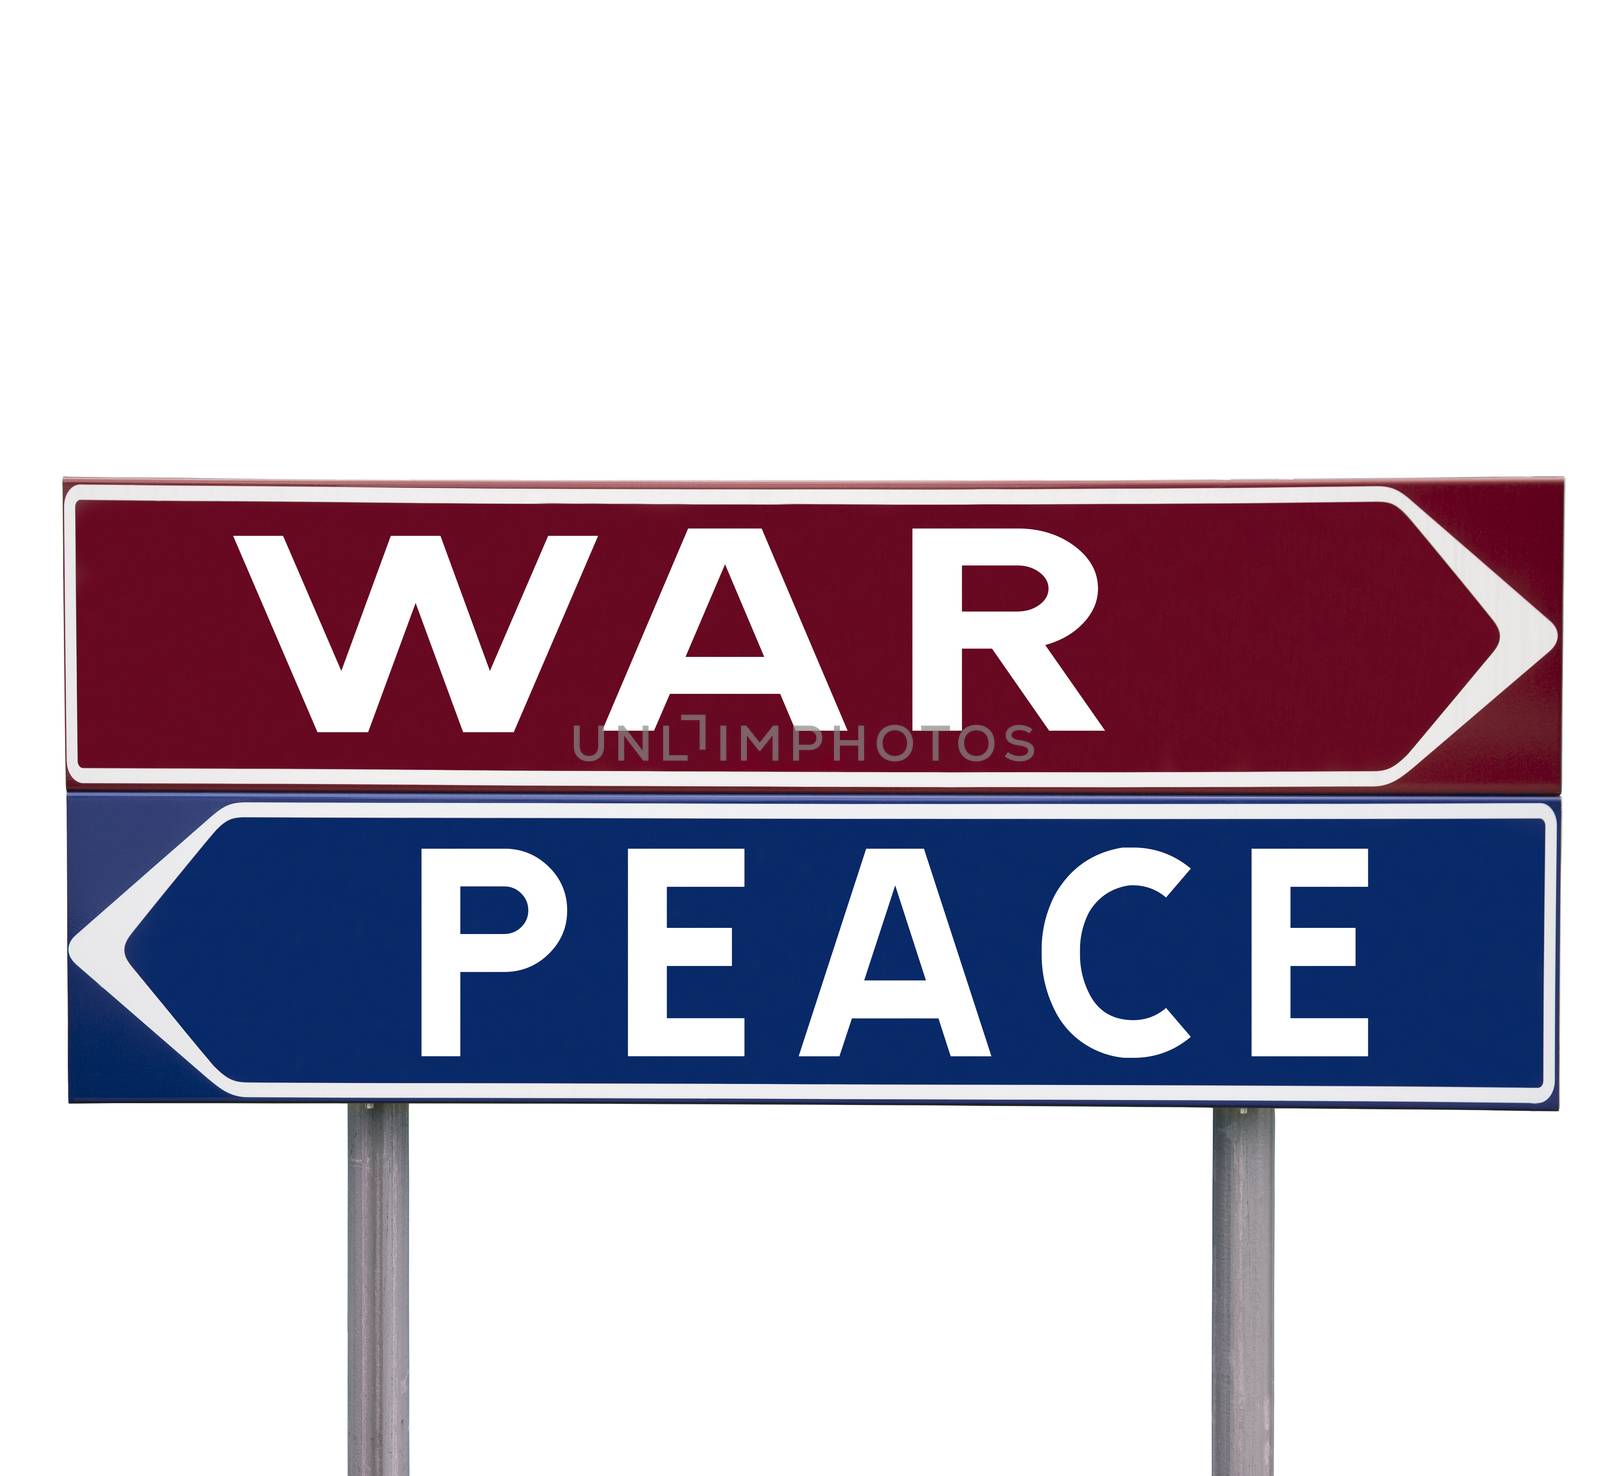 Peace or War by gemenacom